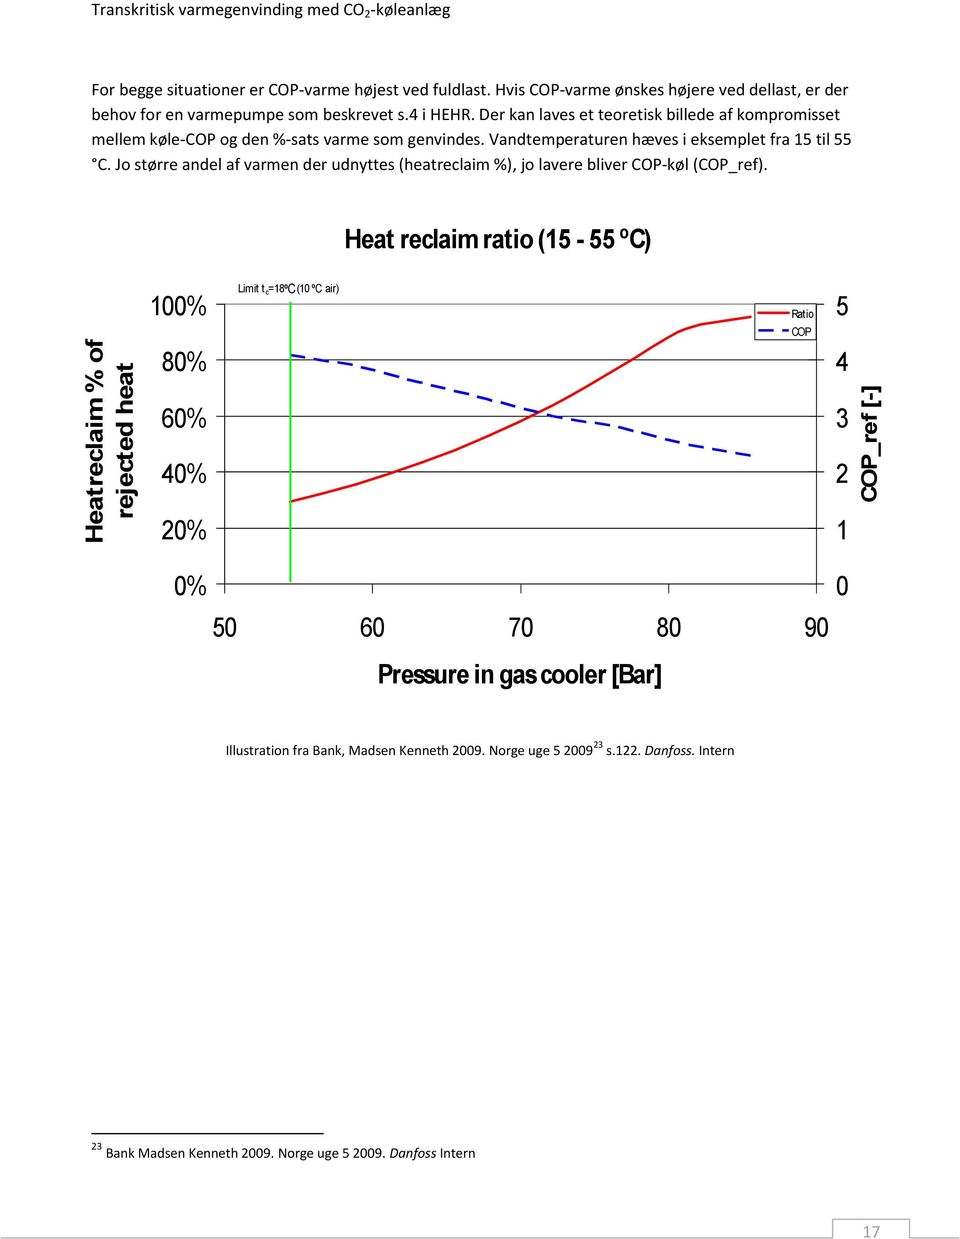 Der kan laves et teoretisk billede af kompromisset mellem køle-cop og den %-sats varme som genvindes. Vandtemperaturen hæves i eksemplet fra 15 til 55 C.